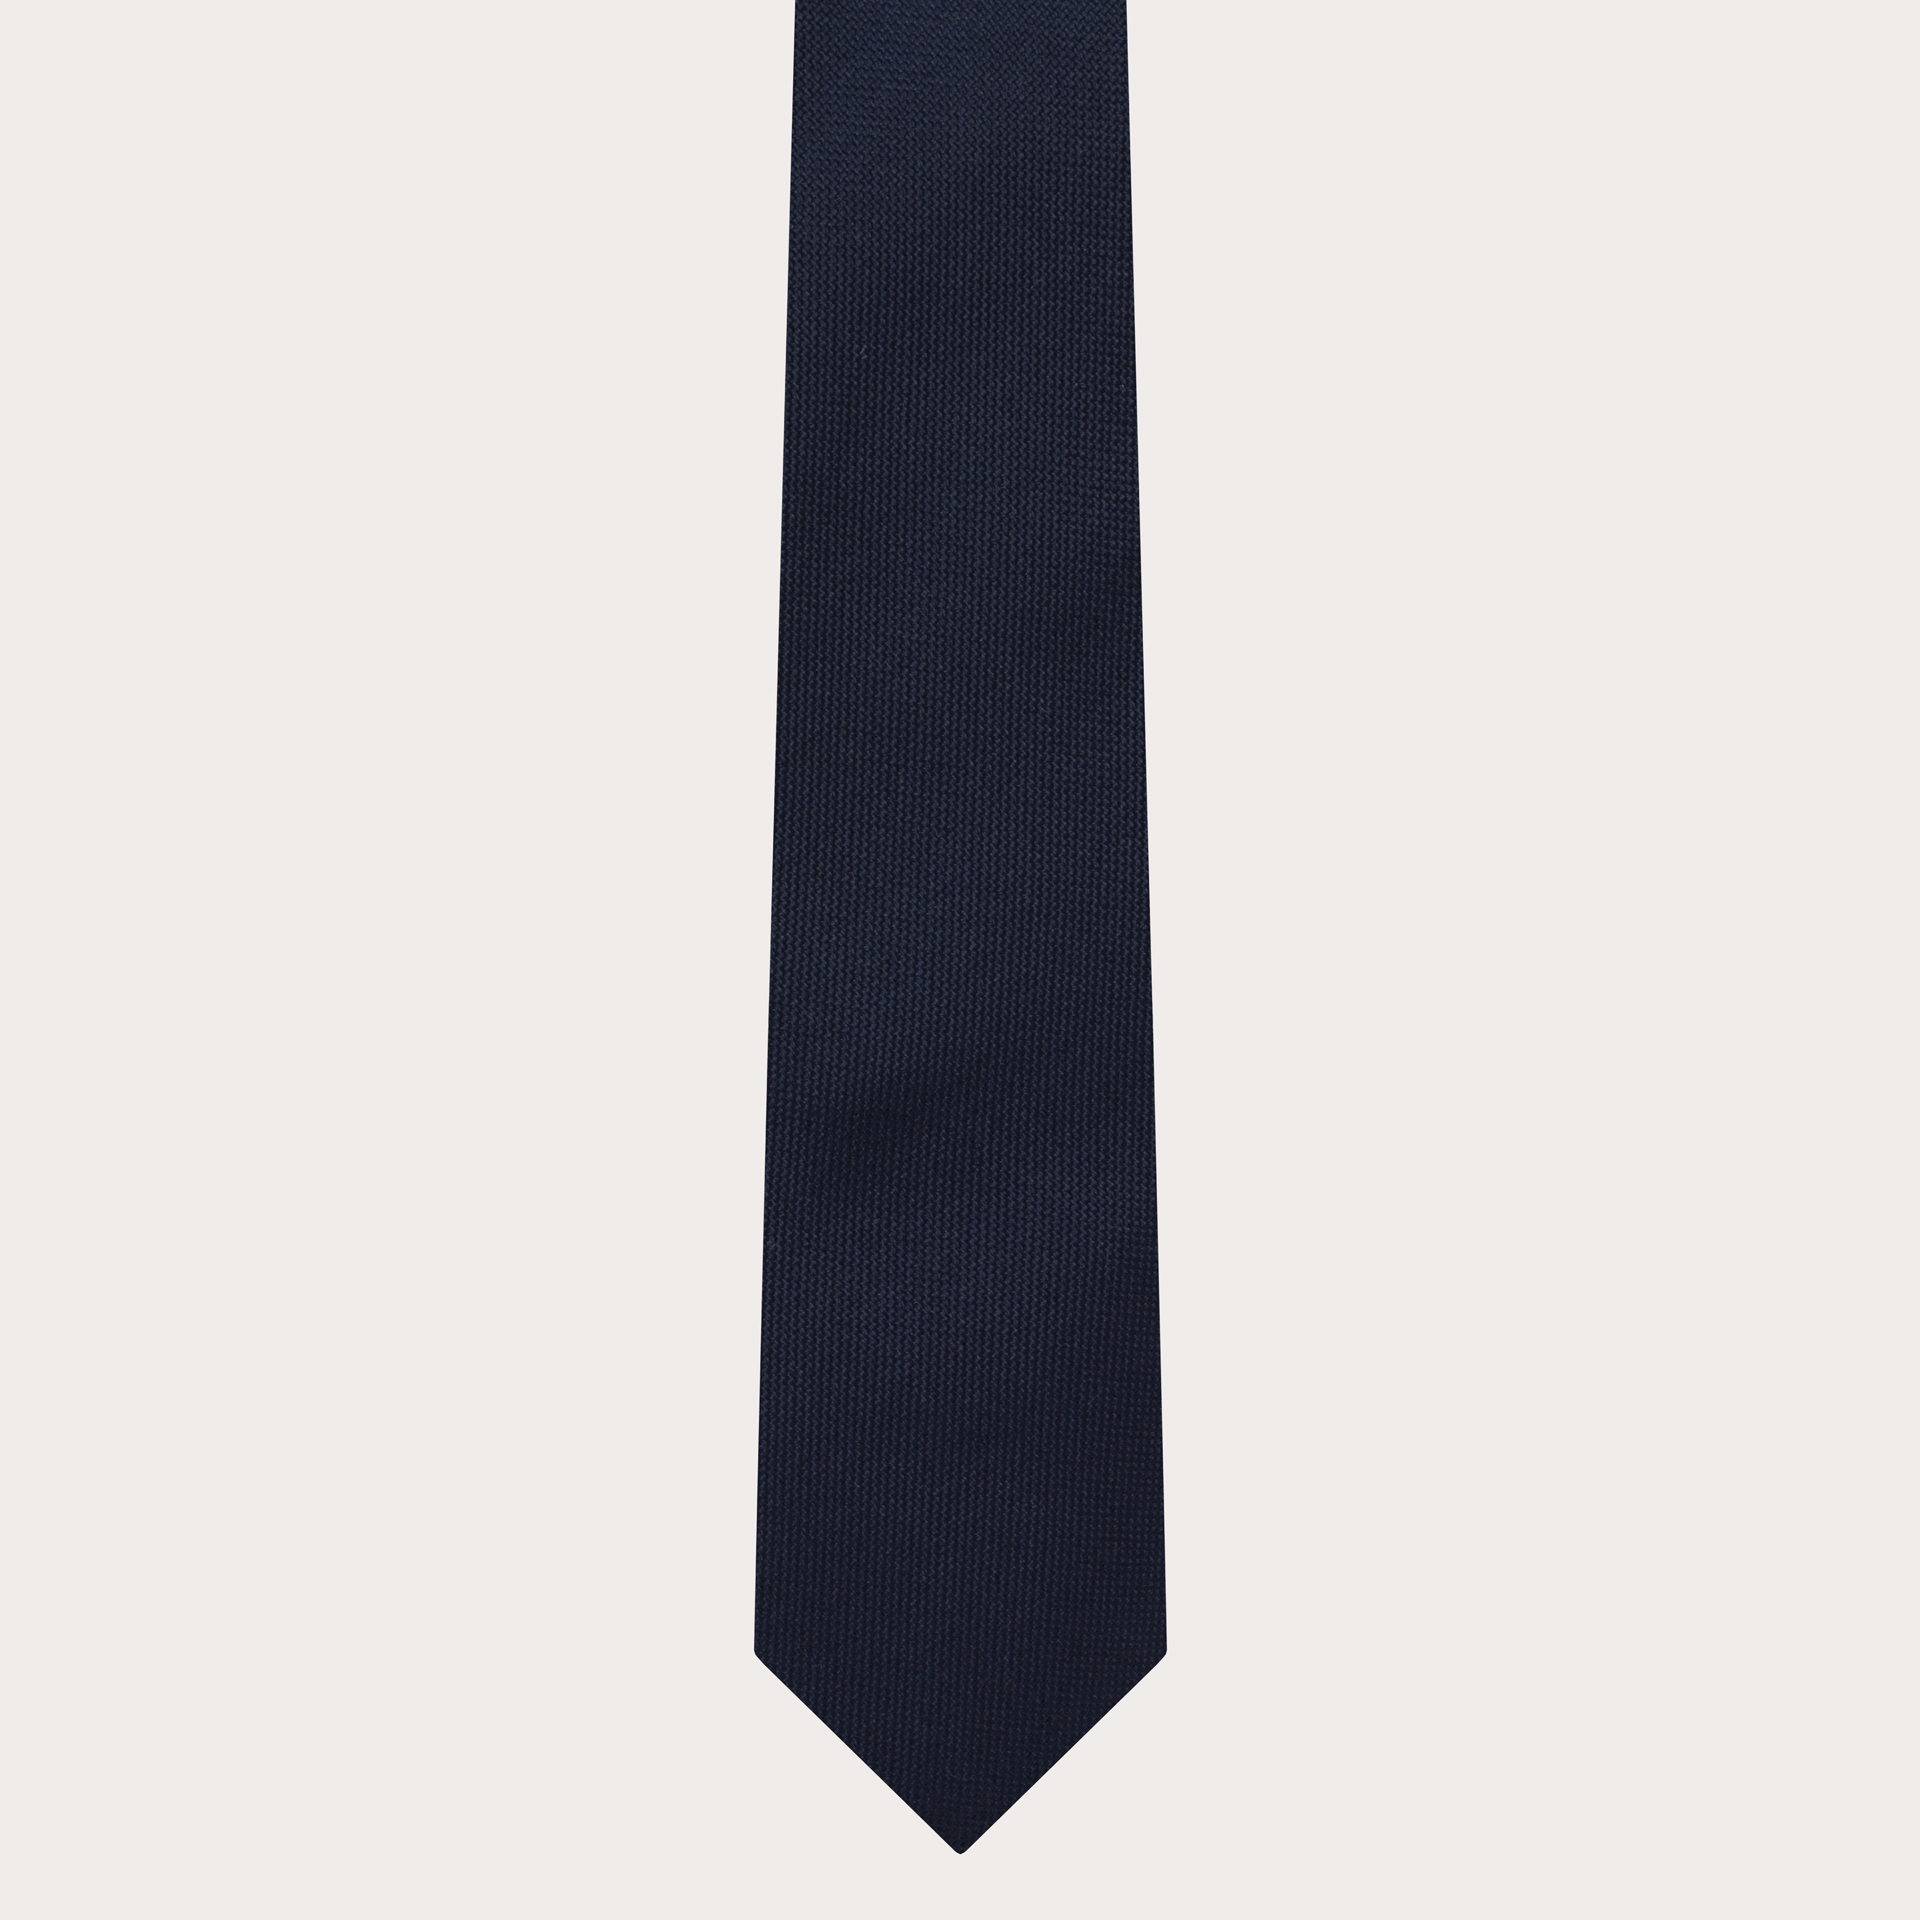 Cravate en soie étroite bleu marine pour homme